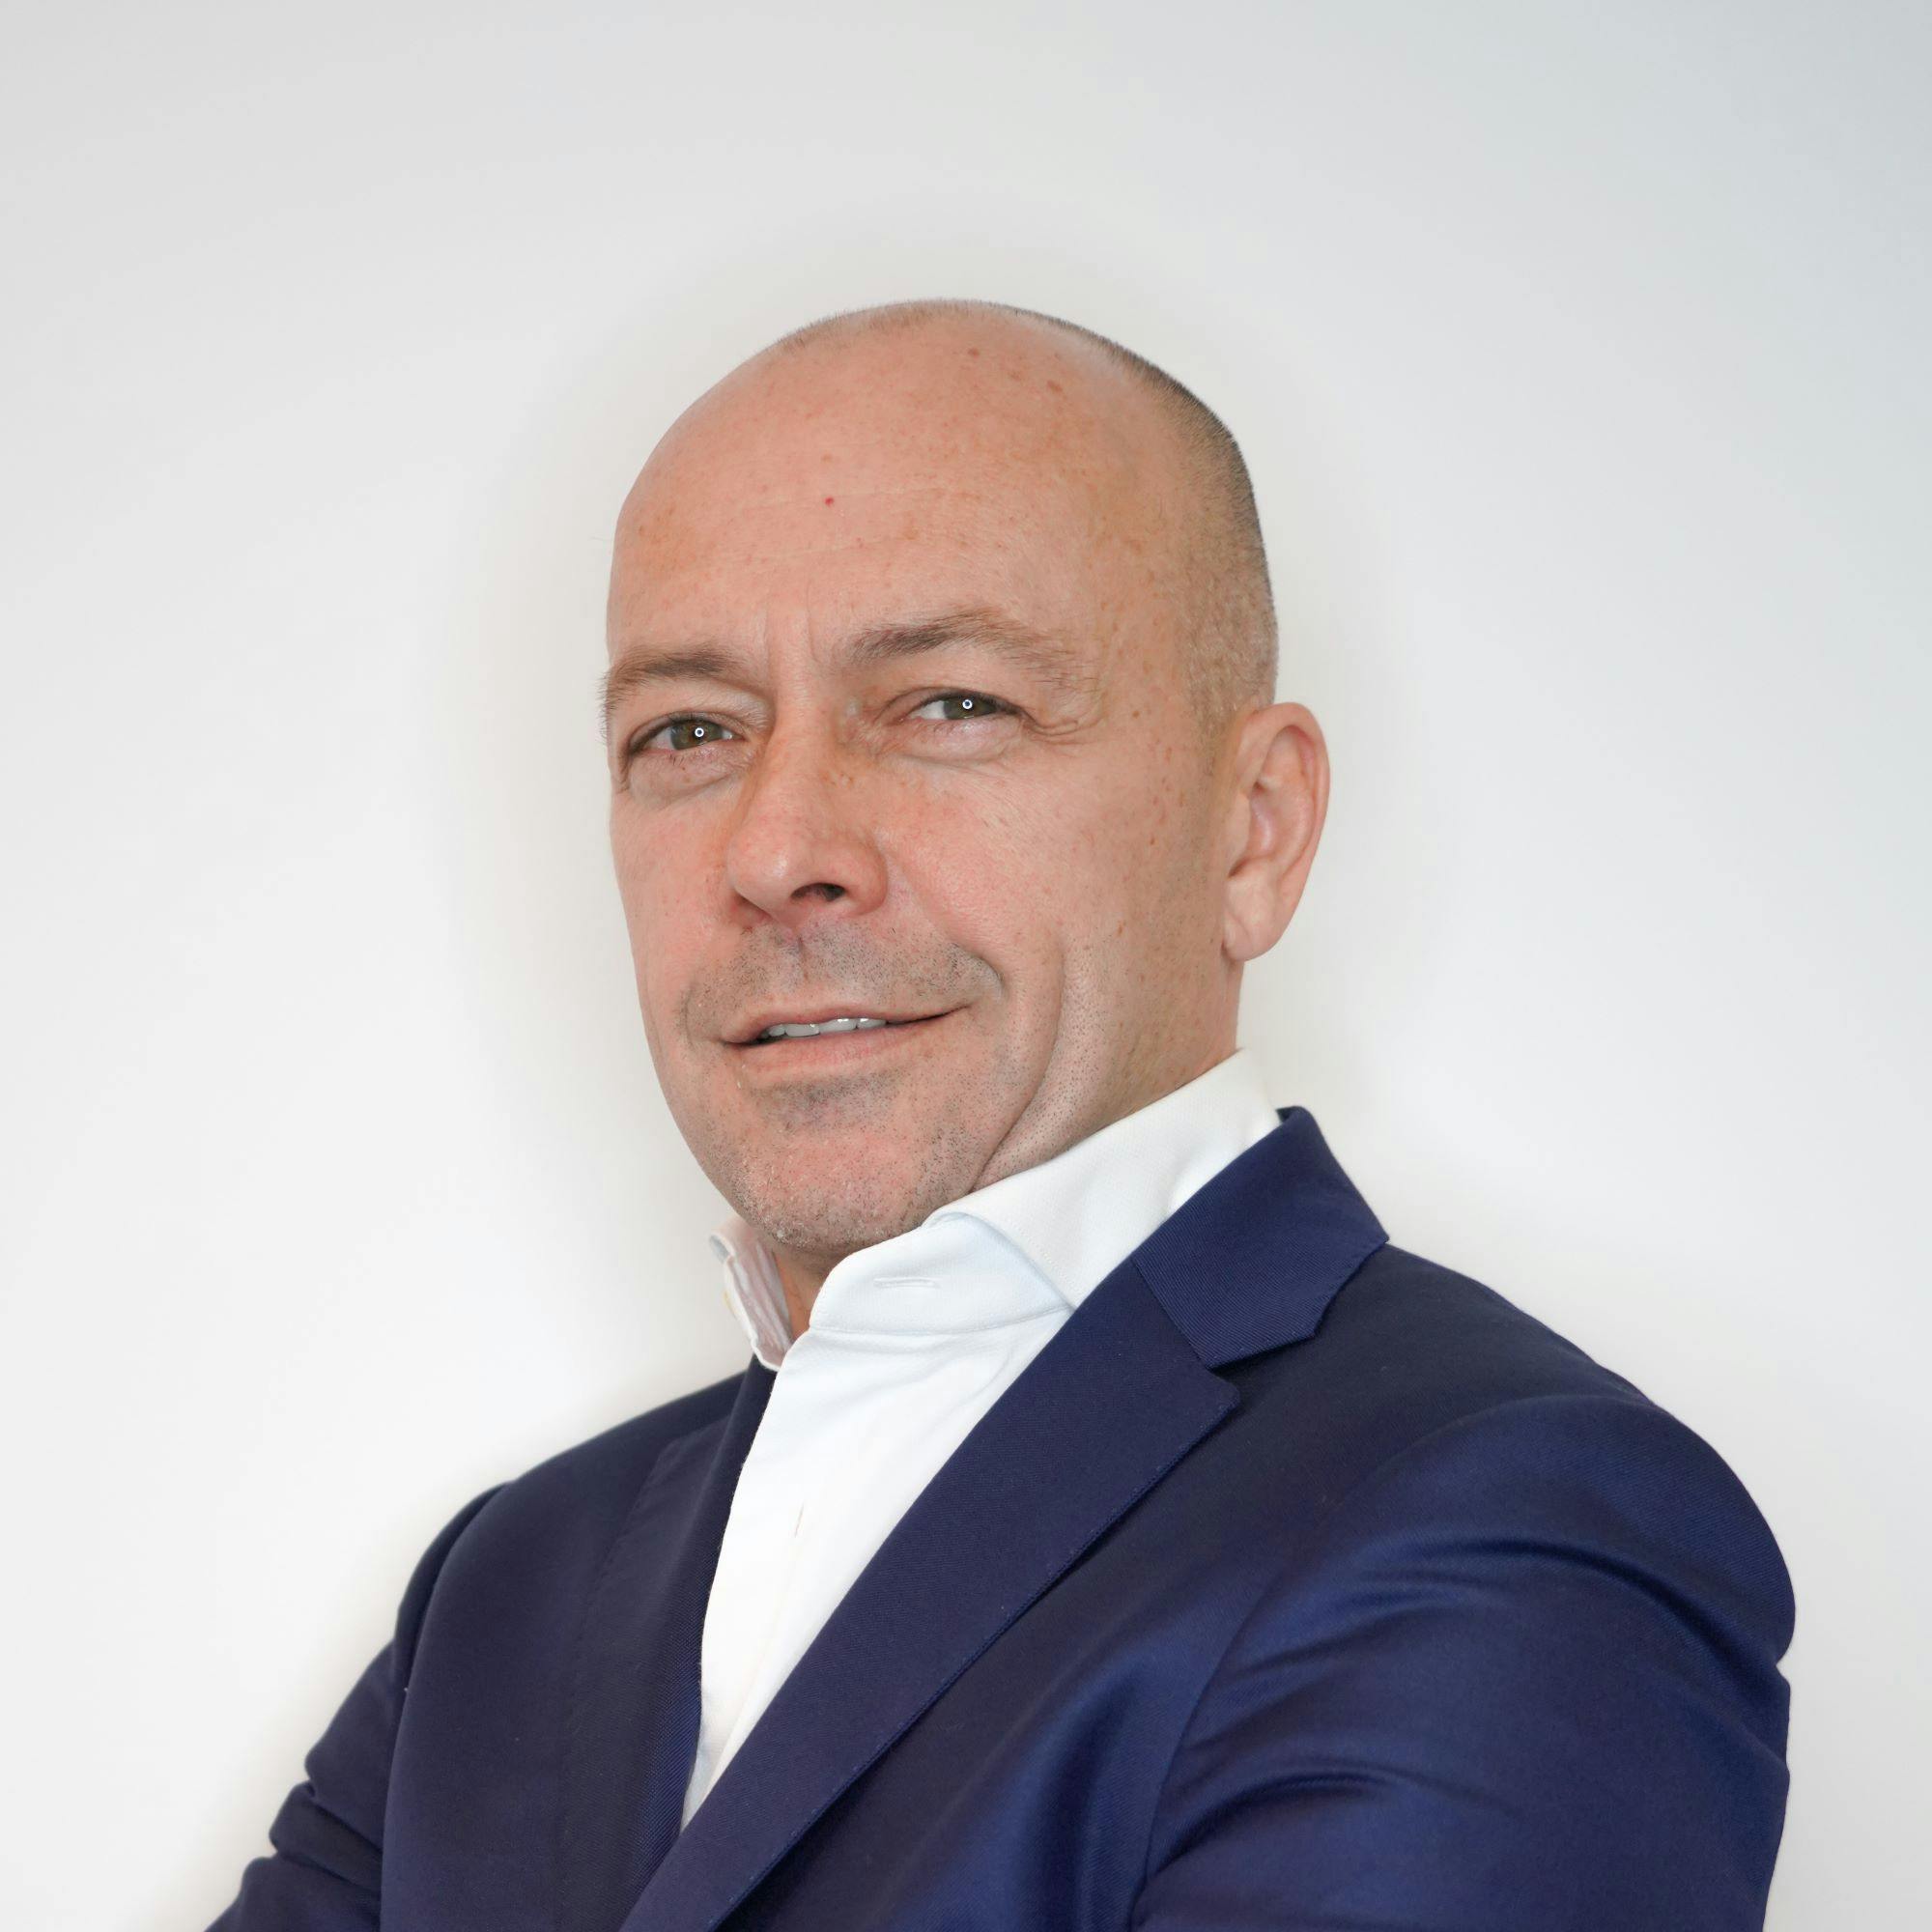 Philippe Thomas, CEO of Vaultinum